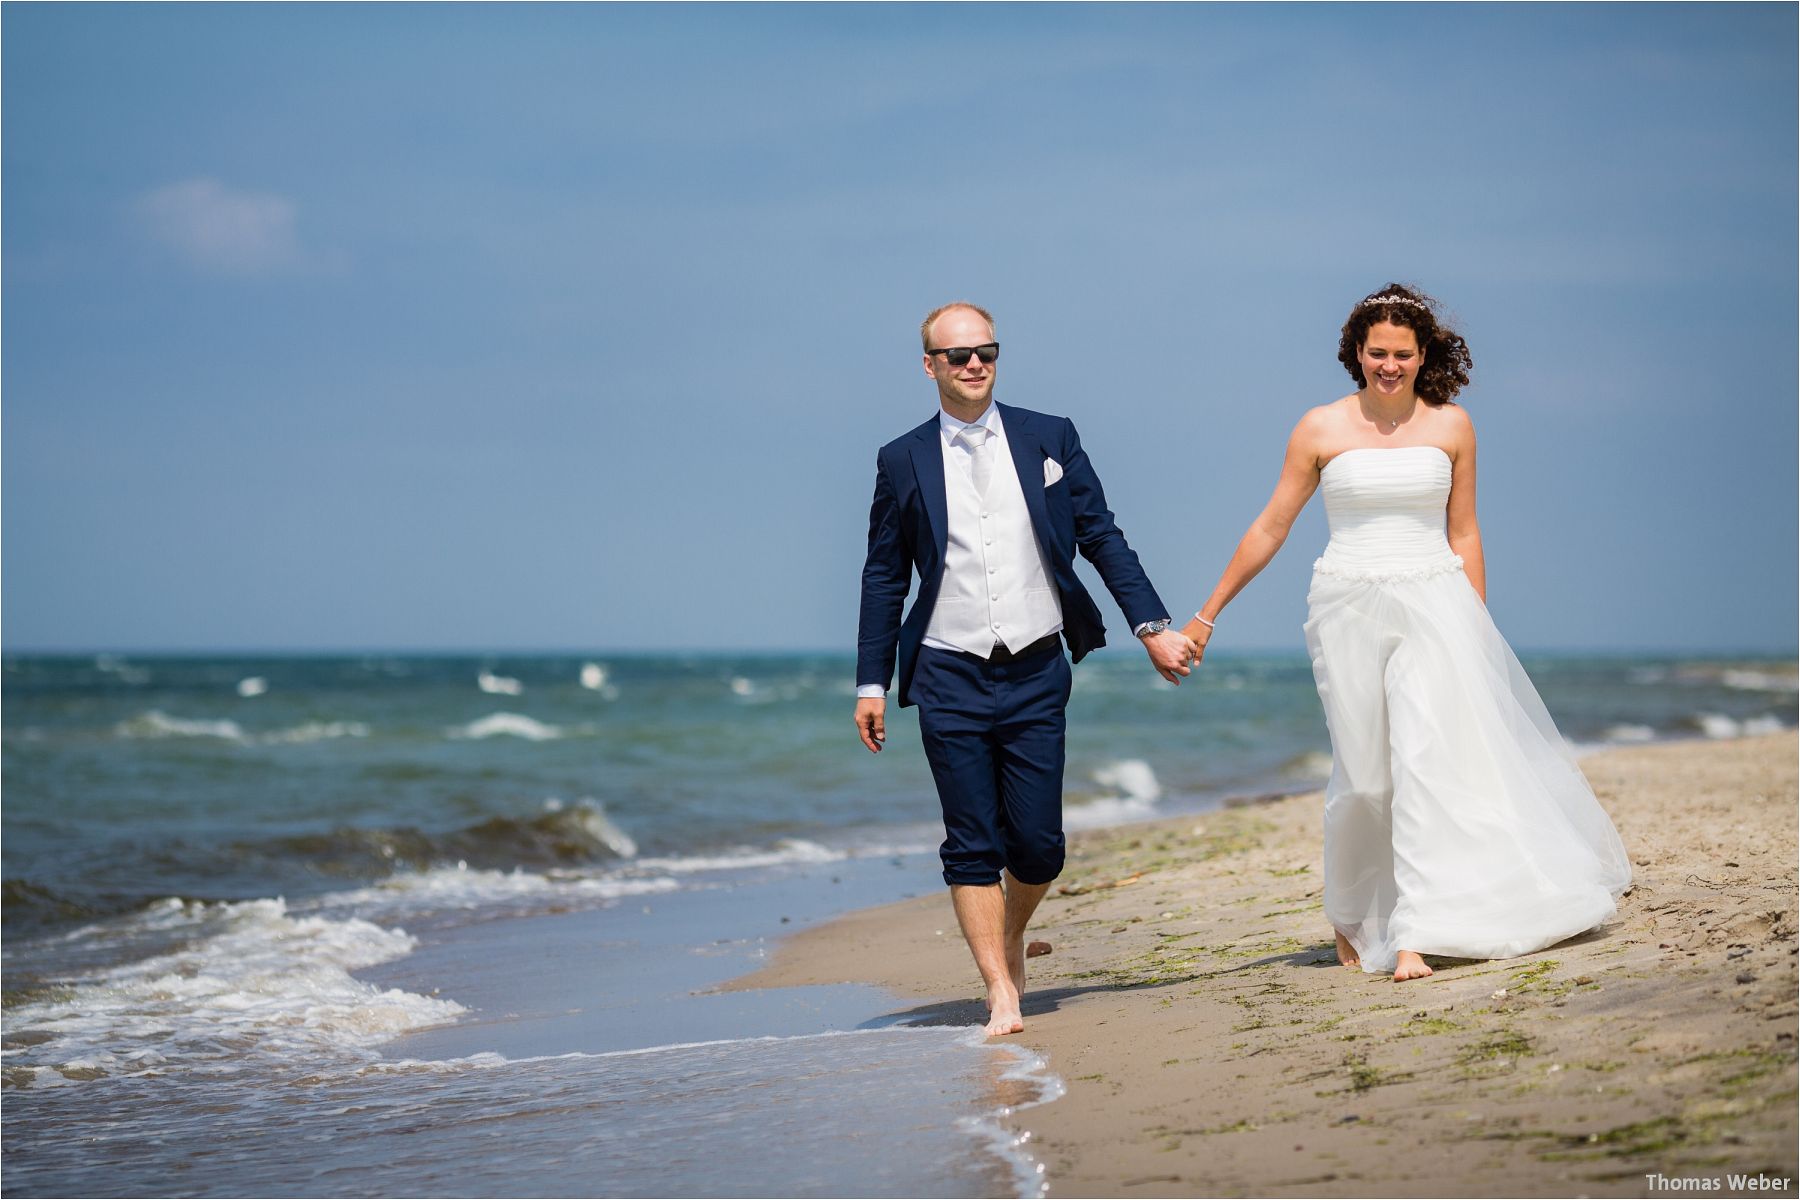 Fotograf Thomas Weber aus Oldenburg: Hochzeitsreportage an der Ostsee